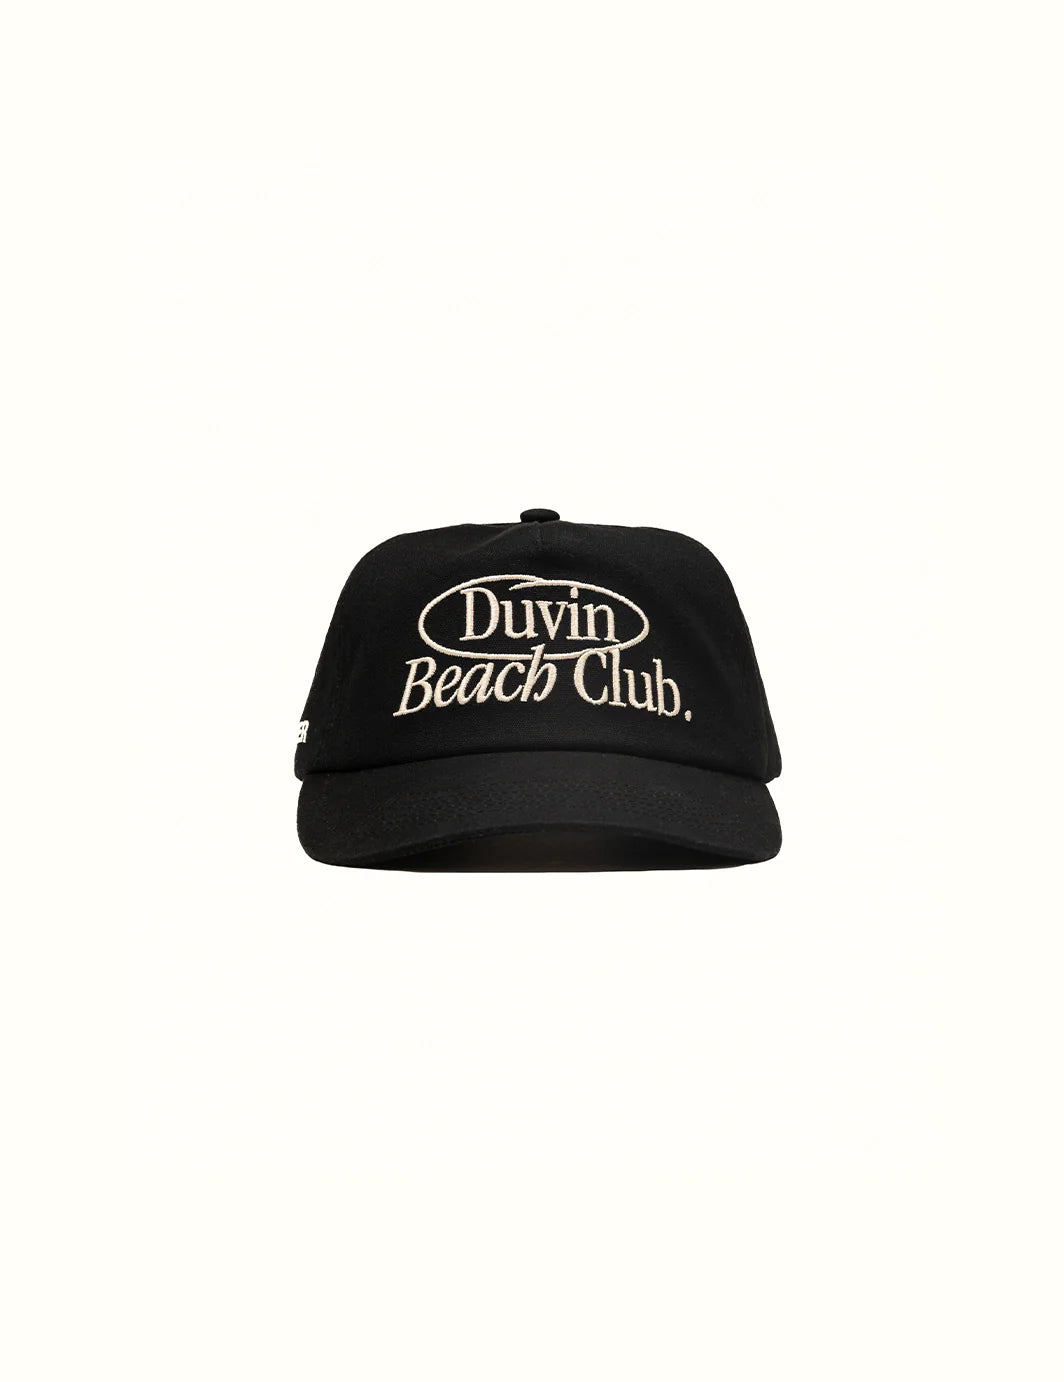 Duvin MEMBERS ONLY HAT - BLACK - Sun Diego Boardshop